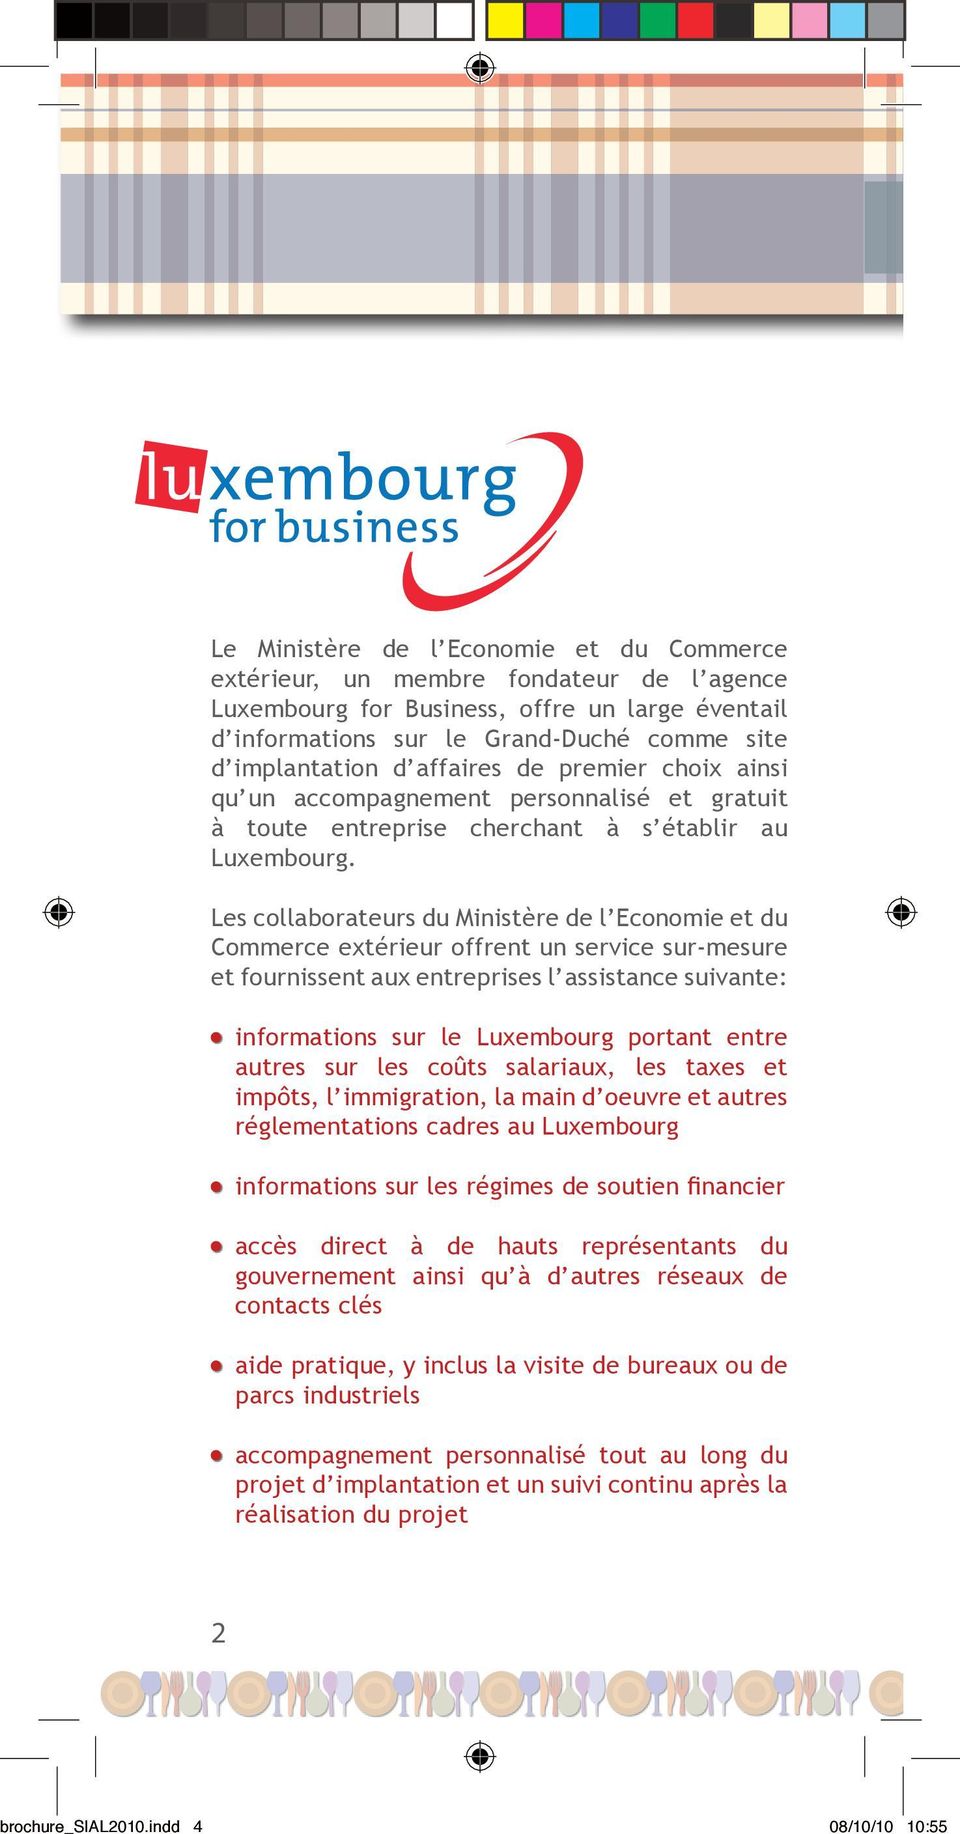 Les collaborateurs du Ministère de l Economie et du Commerce extérieur offrent un service sur-mesure et fournissent aux entreprises l assistance suivante: informations sur le Luxembourg portant entre